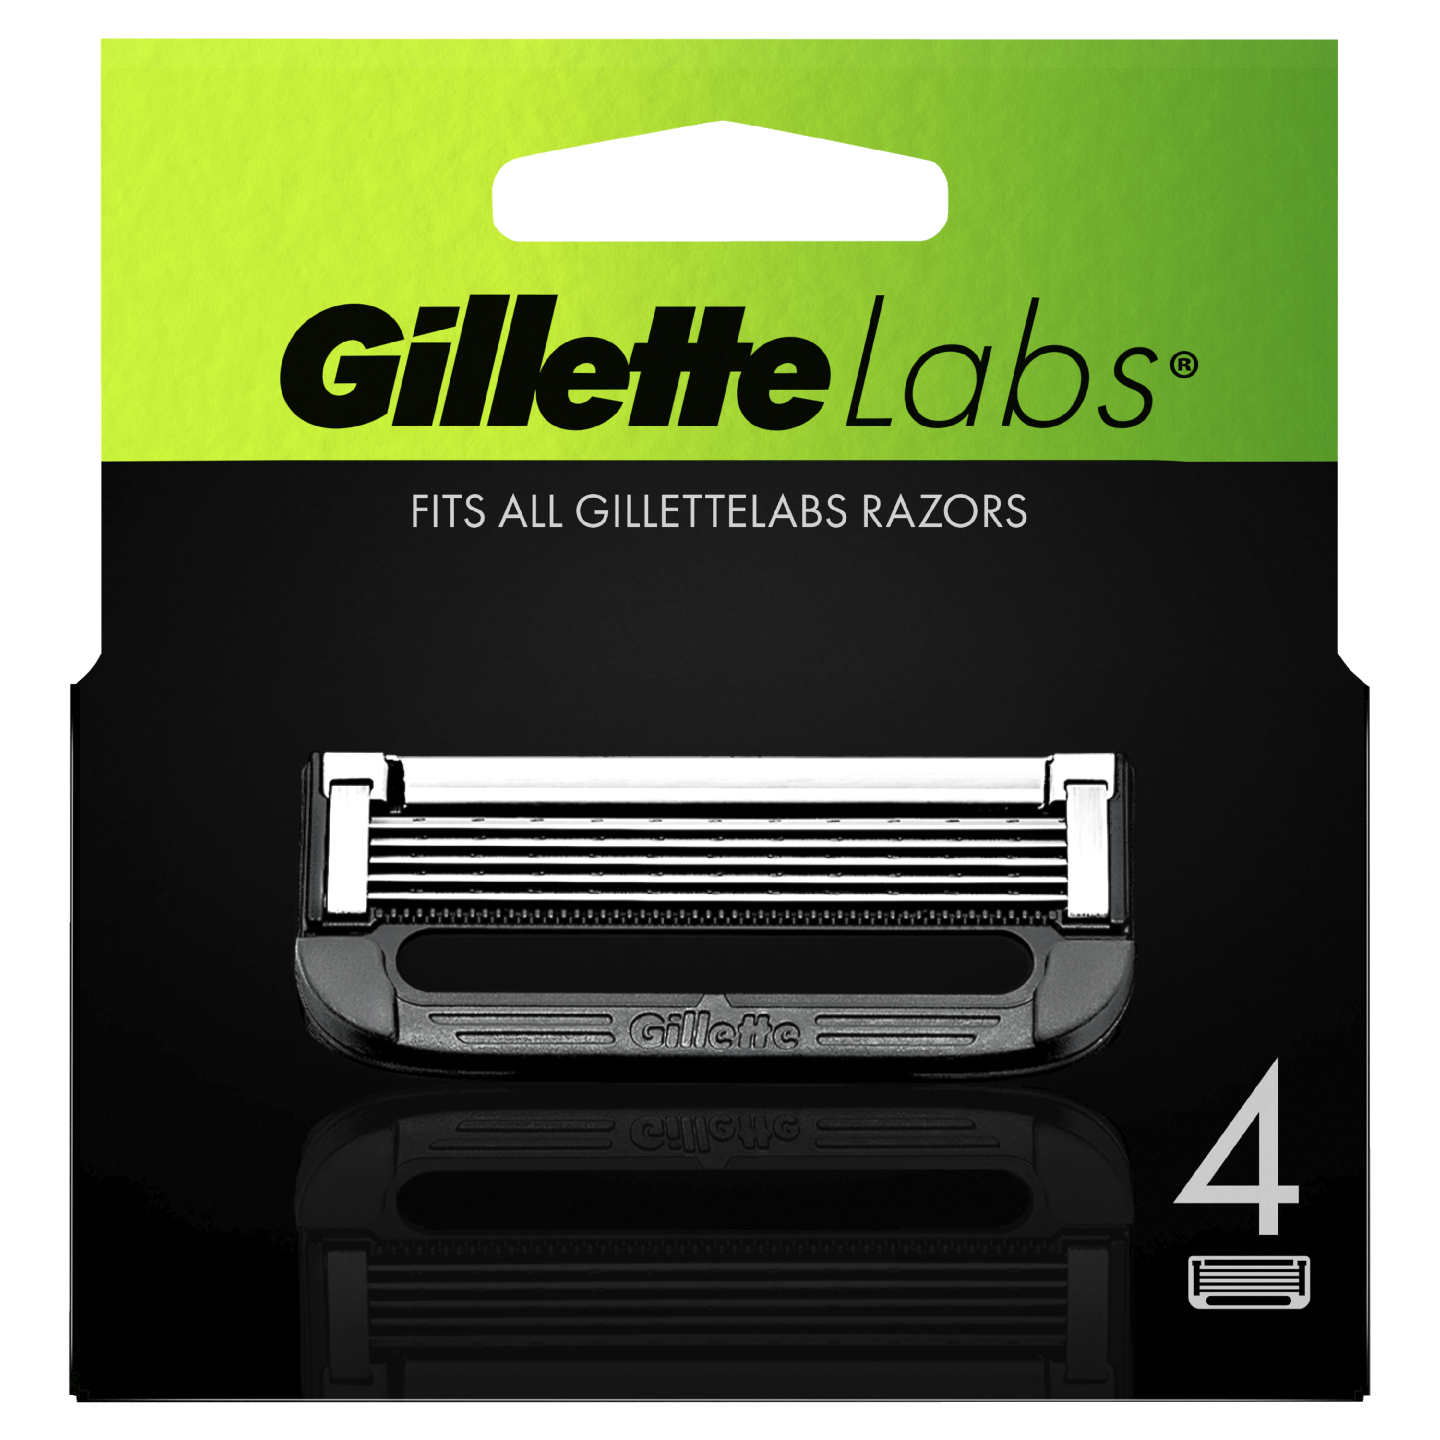 Gillette Labs teräpakkaus 4 kpl